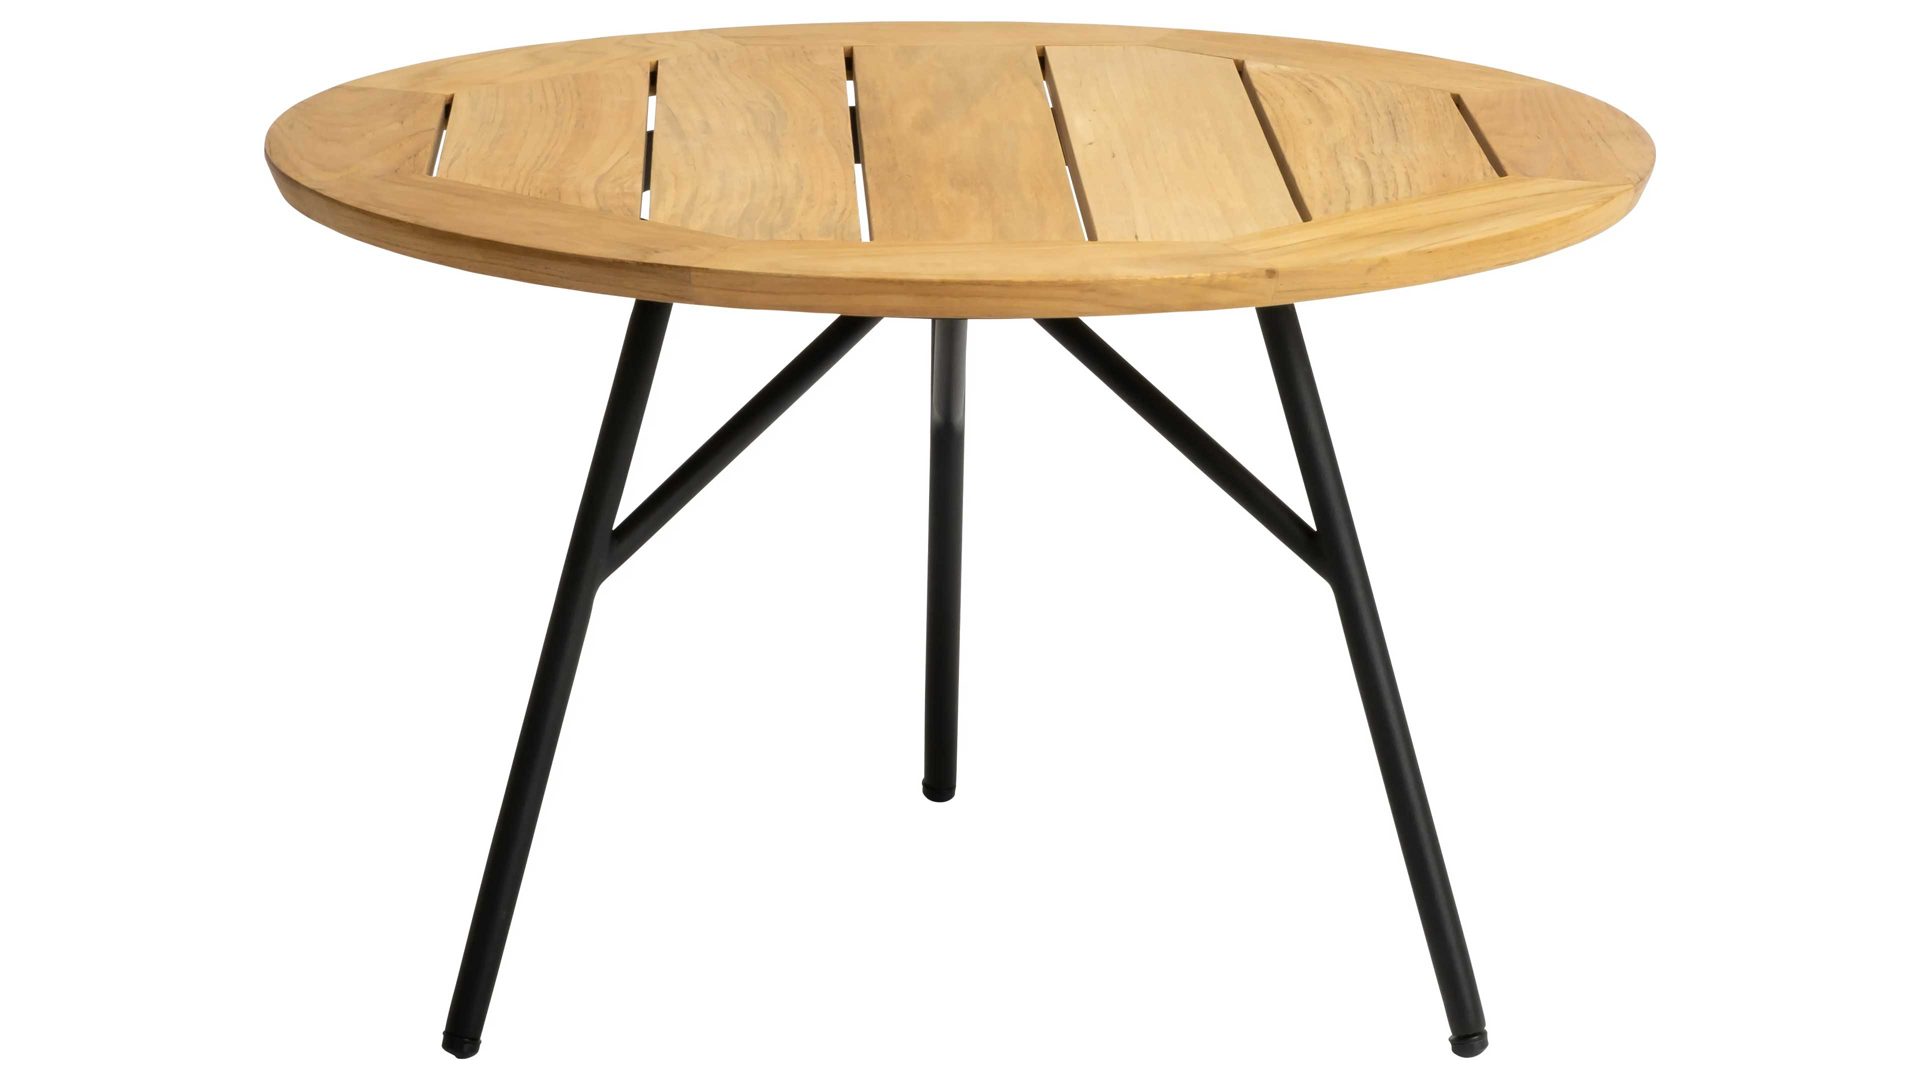 Gartentisch Stern® aus Holz in Holzfarben STERN® Tisch Serie Frida - Beistelltisch Teakholz & schwarzes Aluminium - Durchmesser ca. 65 cm